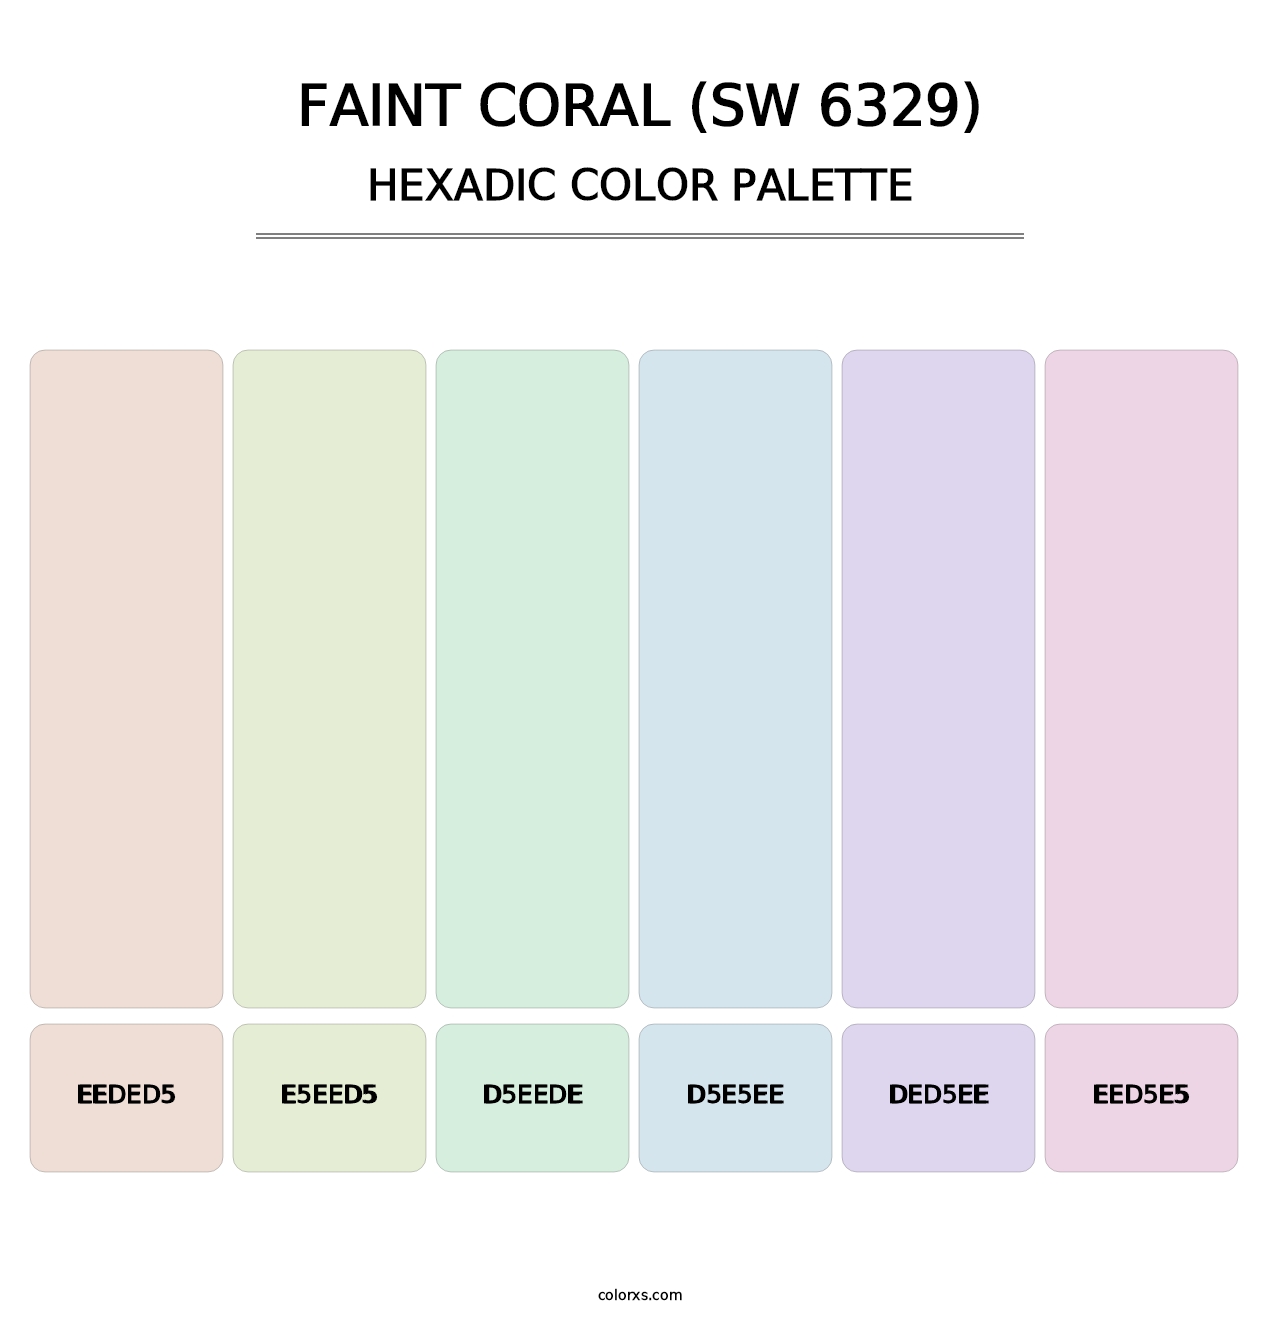 Faint Coral (SW 6329) - Hexadic Color Palette